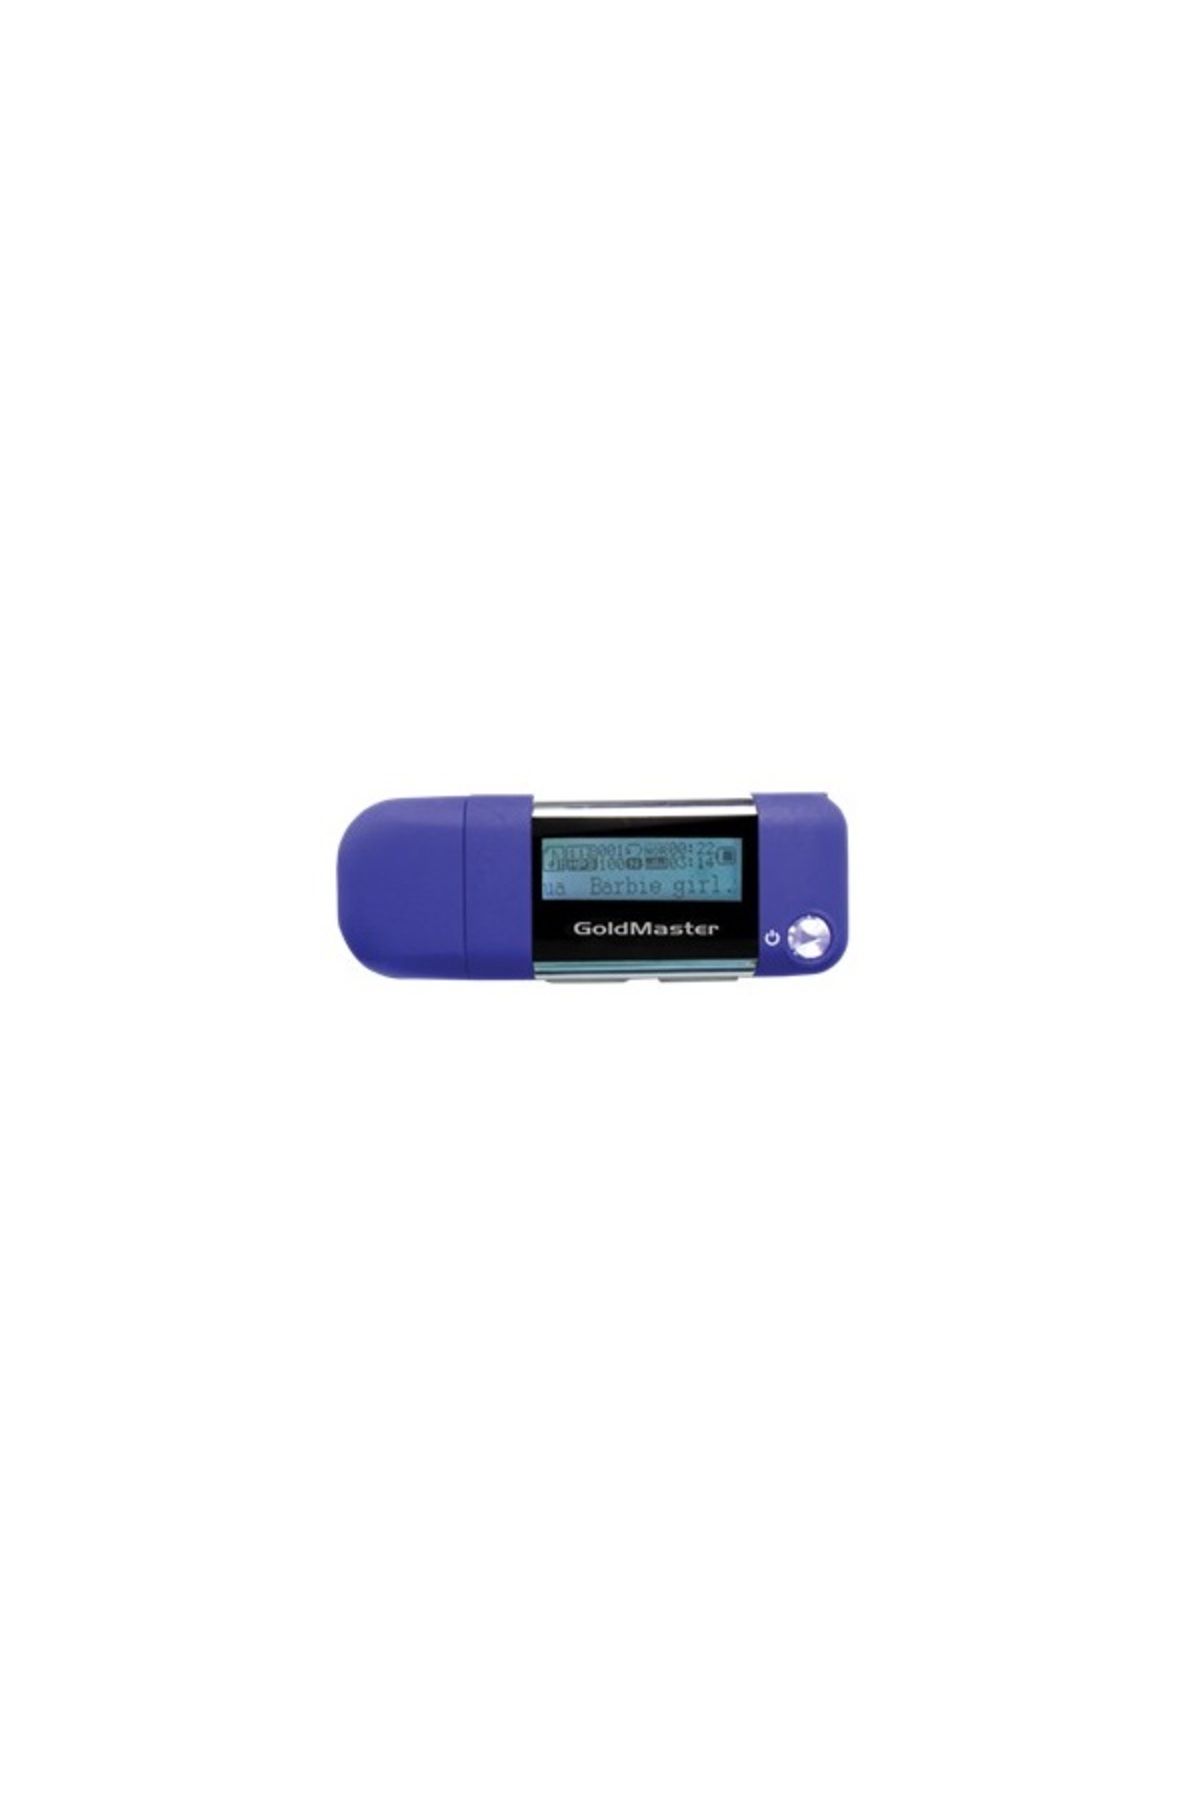 GoldMaster MP3-104 2GB MP3 Player Müzik Çalar